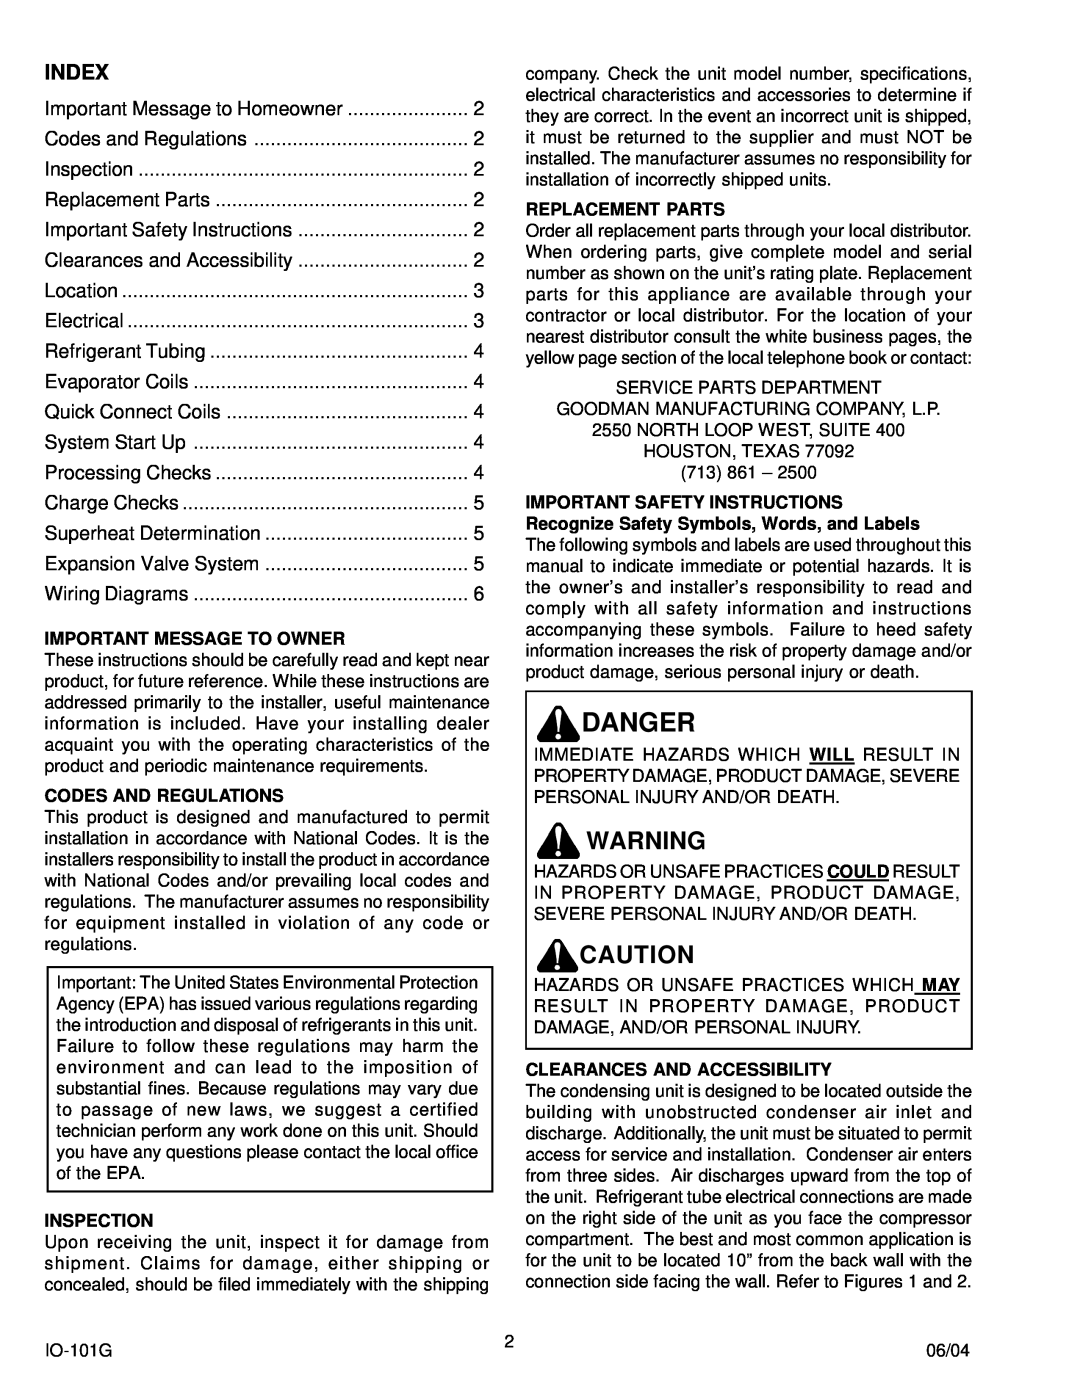 Goodman Mfg IO-101G manual Index, Danger 